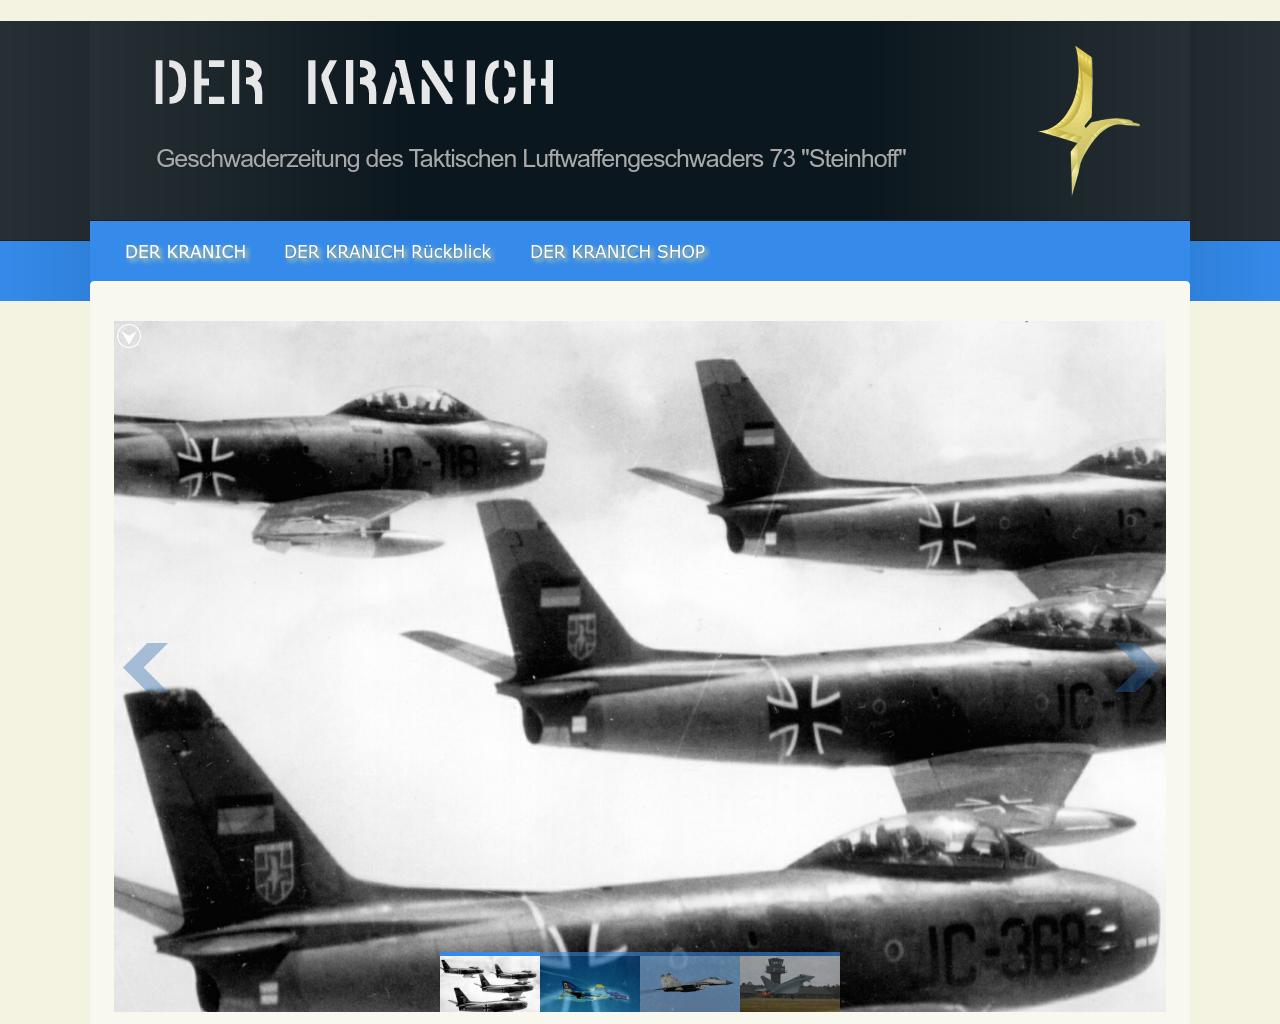 Bild Website derkranich.de in 1280x1024